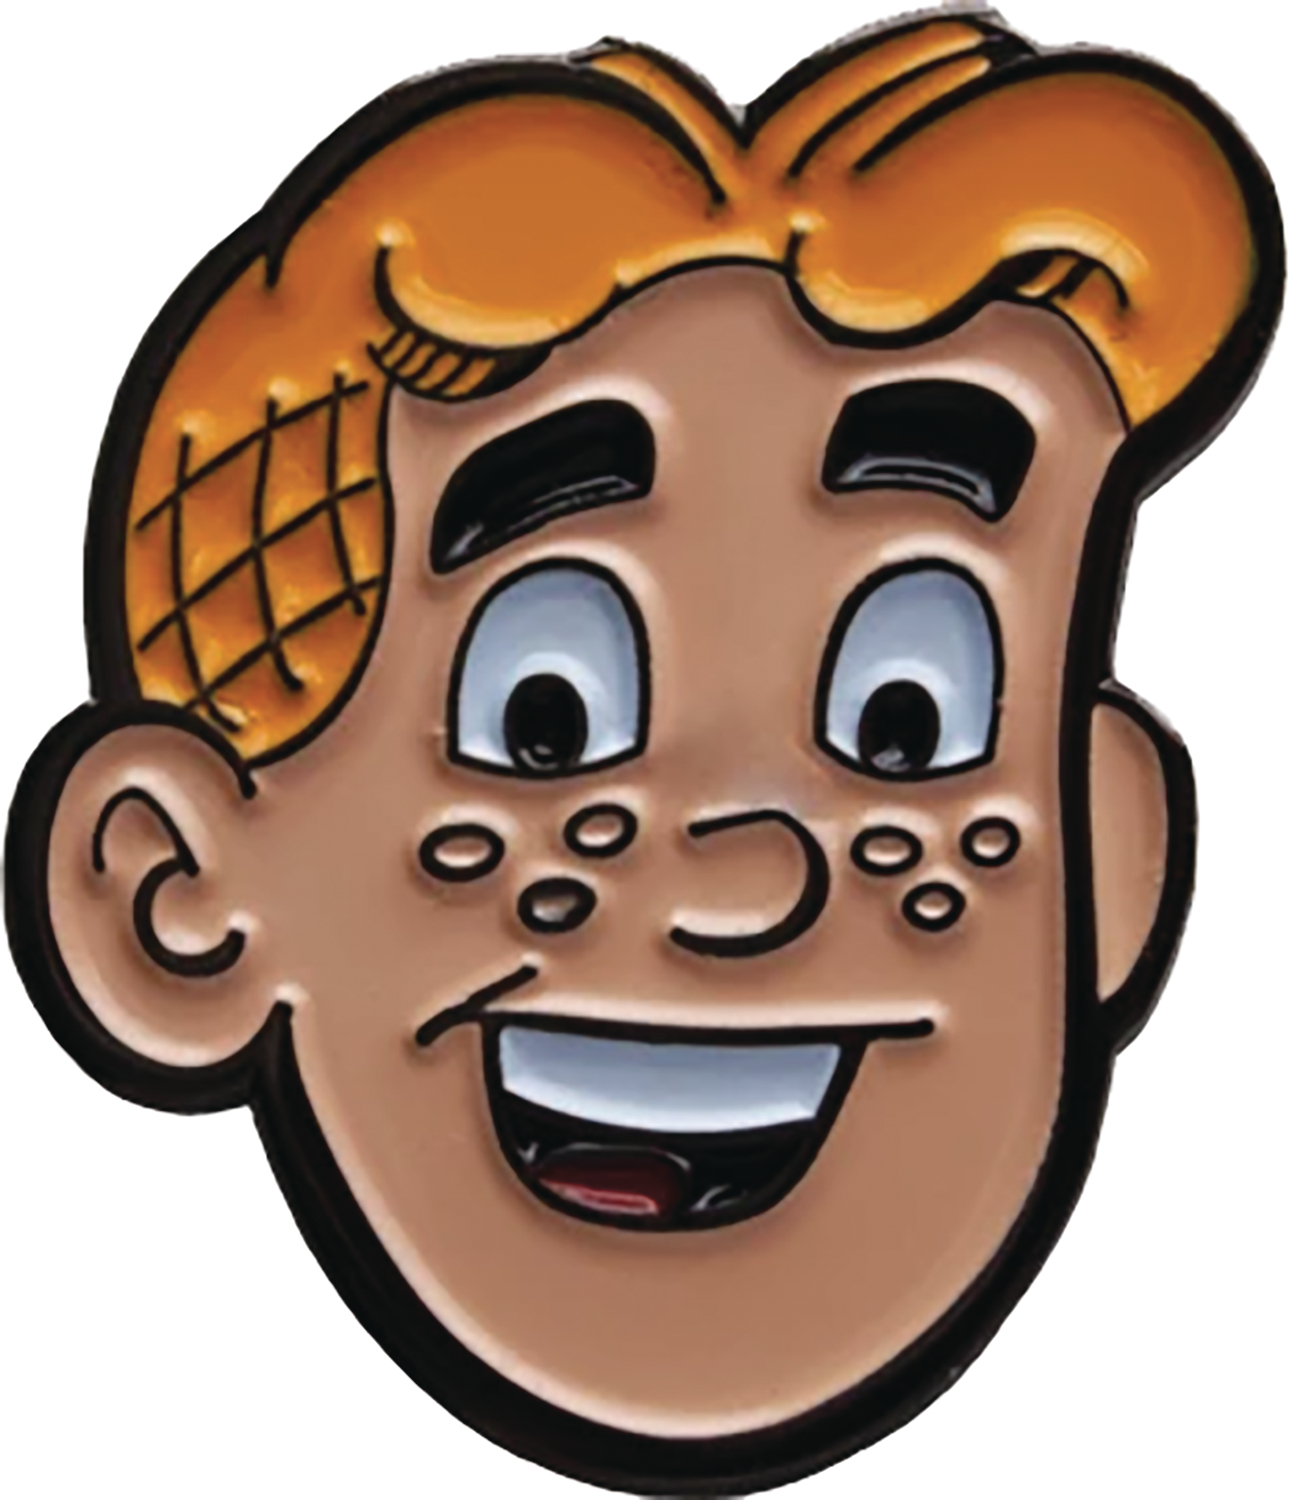 Archie Comics Archie Andrews Enamel Pin